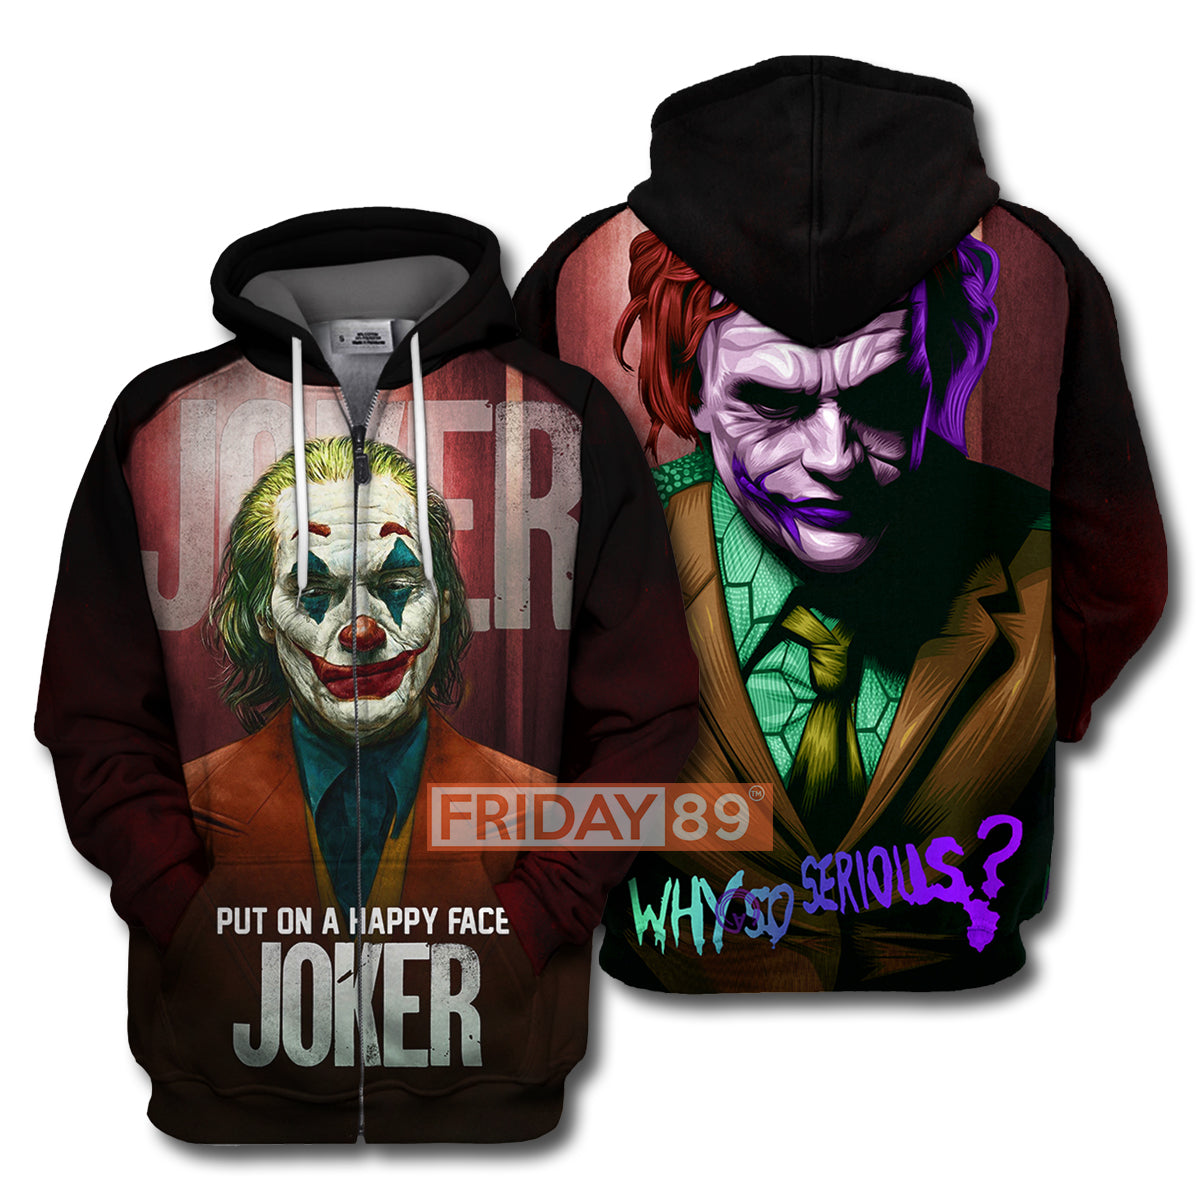 Unifinz DC Joker T-shirt 3D Print Joker Phoenix and H.Ledger T-shirt DC Joker Hoodie Sweater Tank 2025